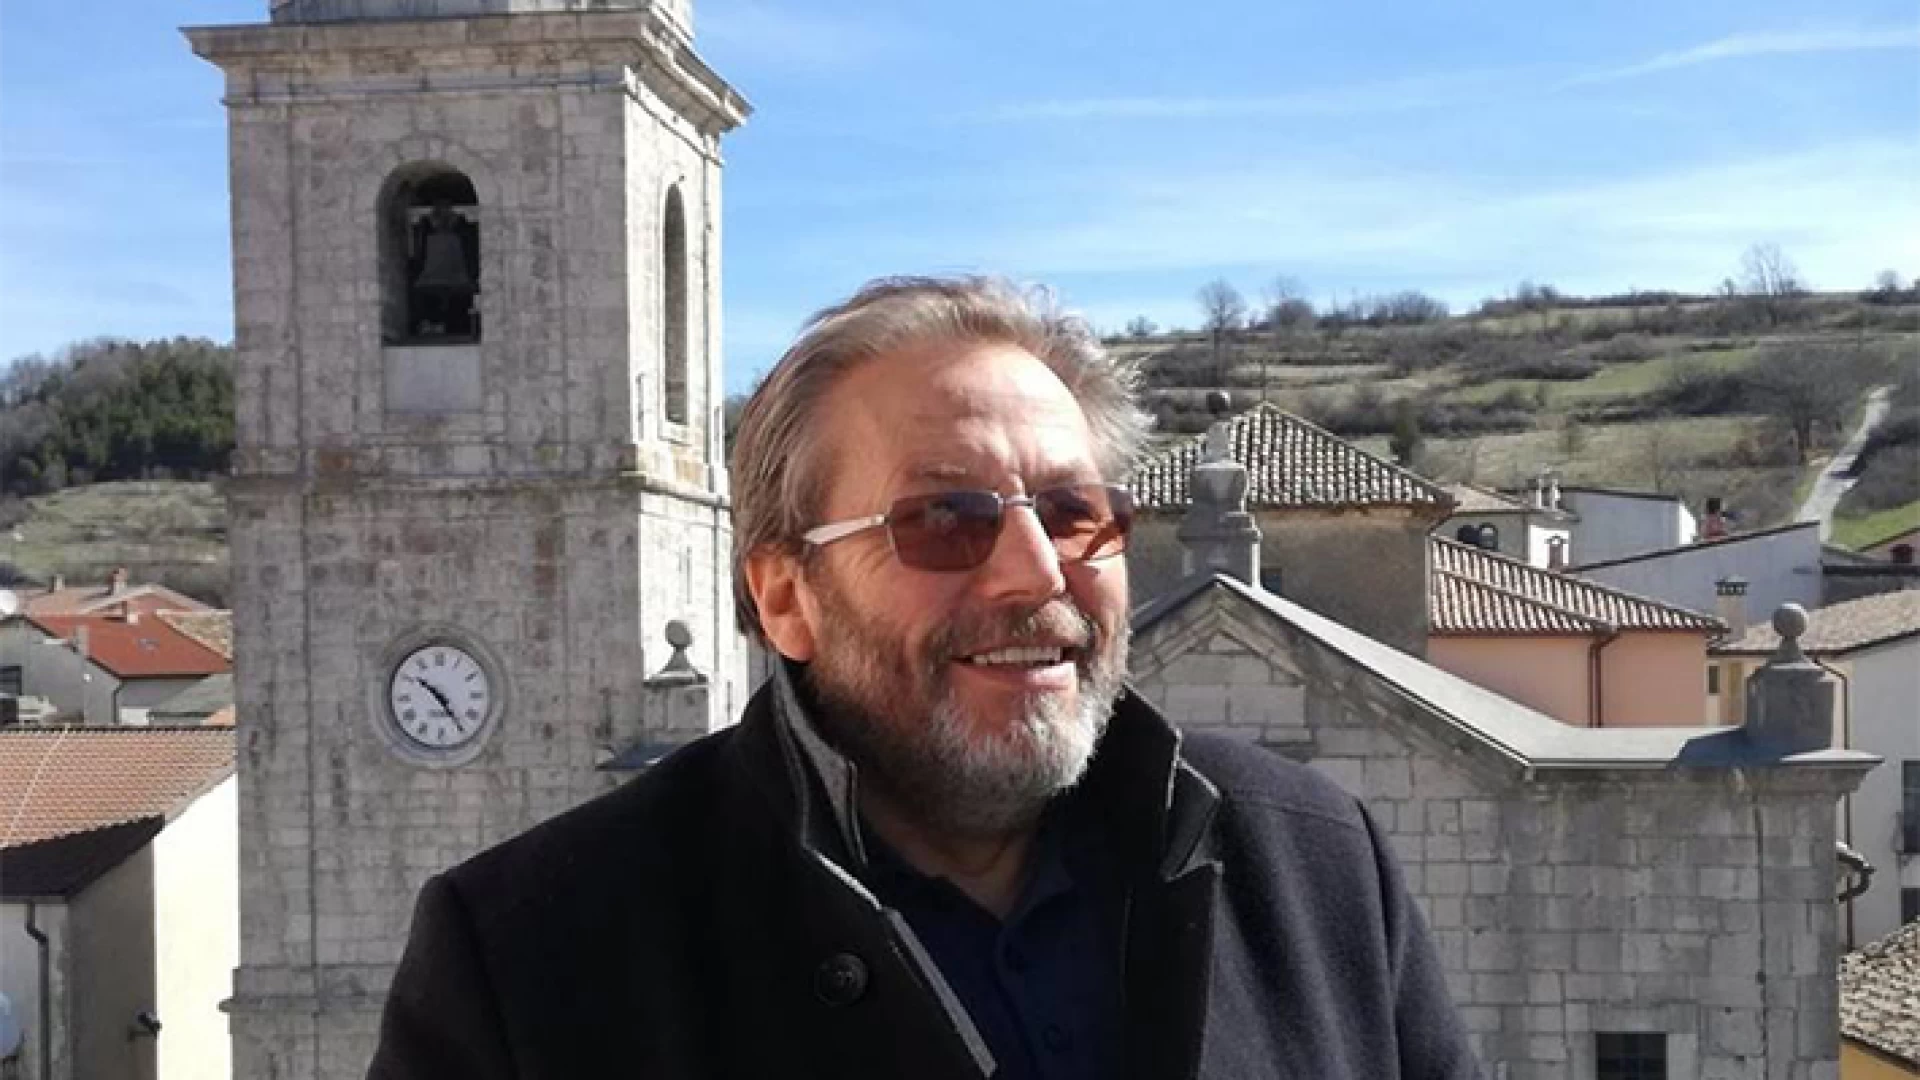 Rionero Sannitico: “Miglioriamo la qualità della vita del nostro paese”. Il sindaco uscente Minichiello traccia il bilancio dei risultati ottenuti.